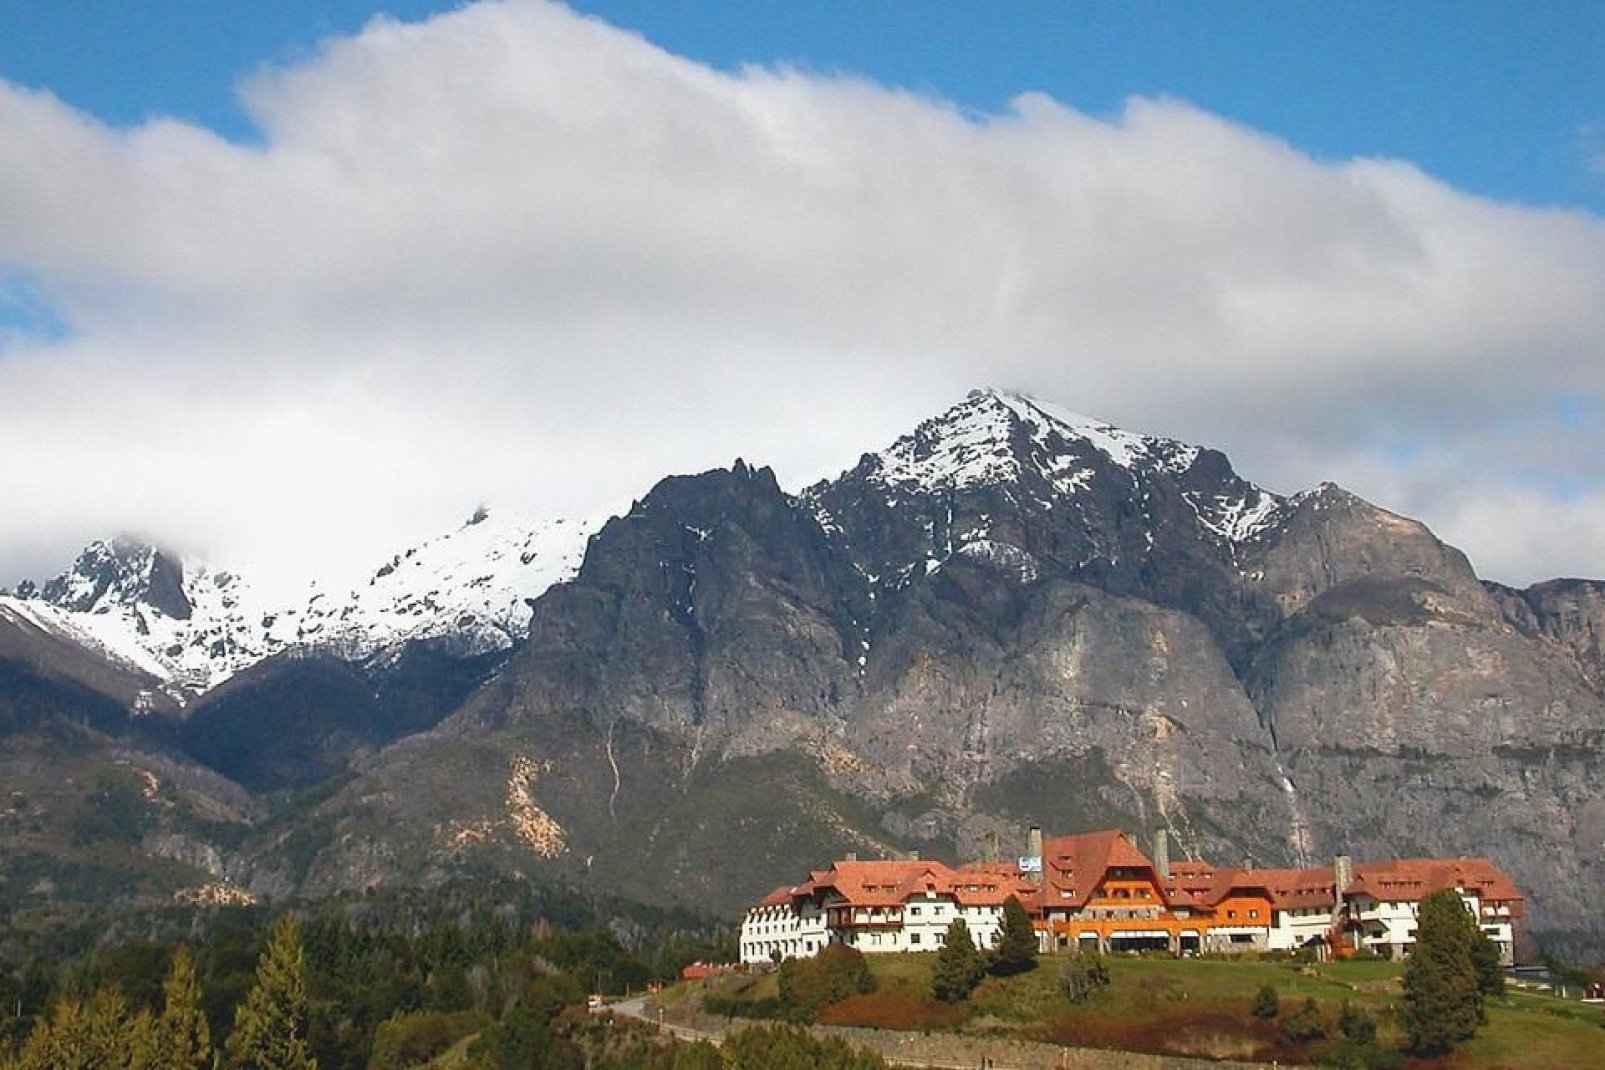 Die am Fue der Anden gelegene Stadt ist von Seen und Bergen umgeben.